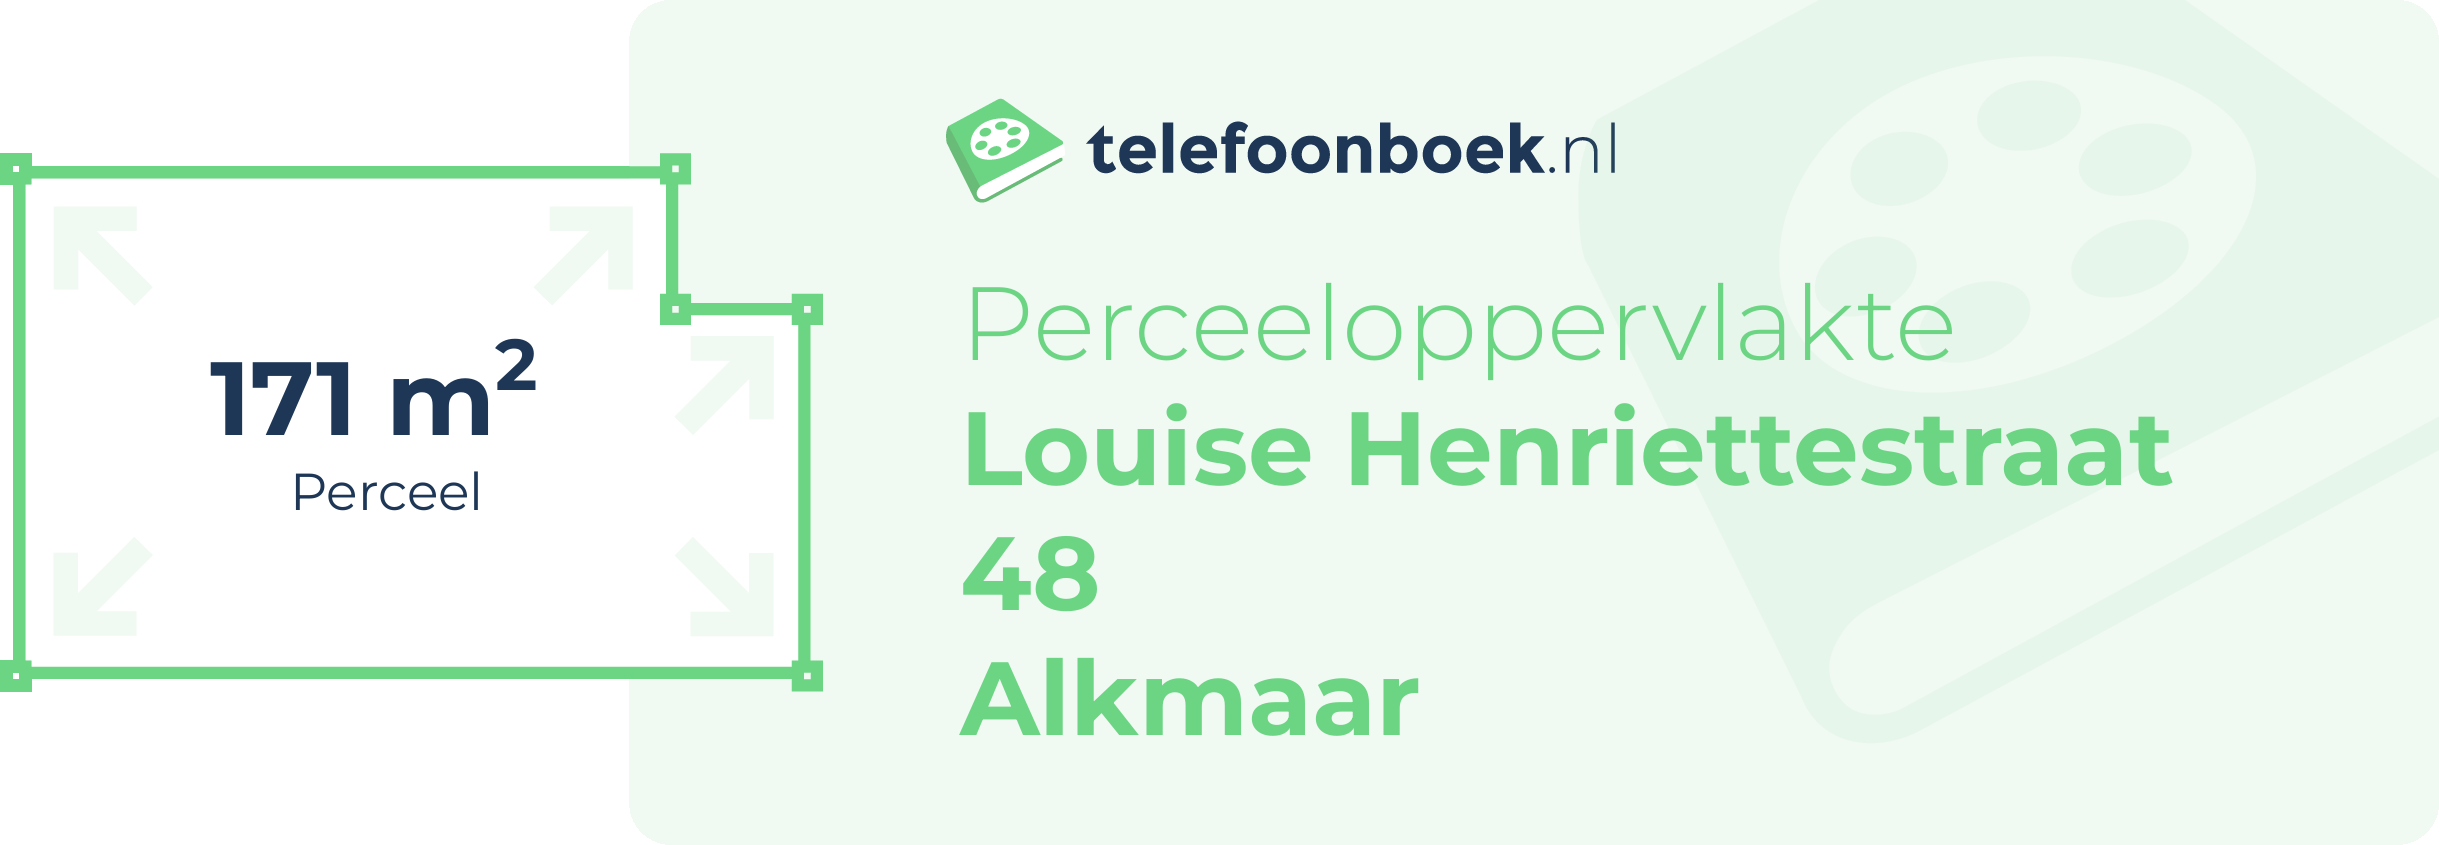 Perceeloppervlakte Louise Henriettestraat 48 Alkmaar